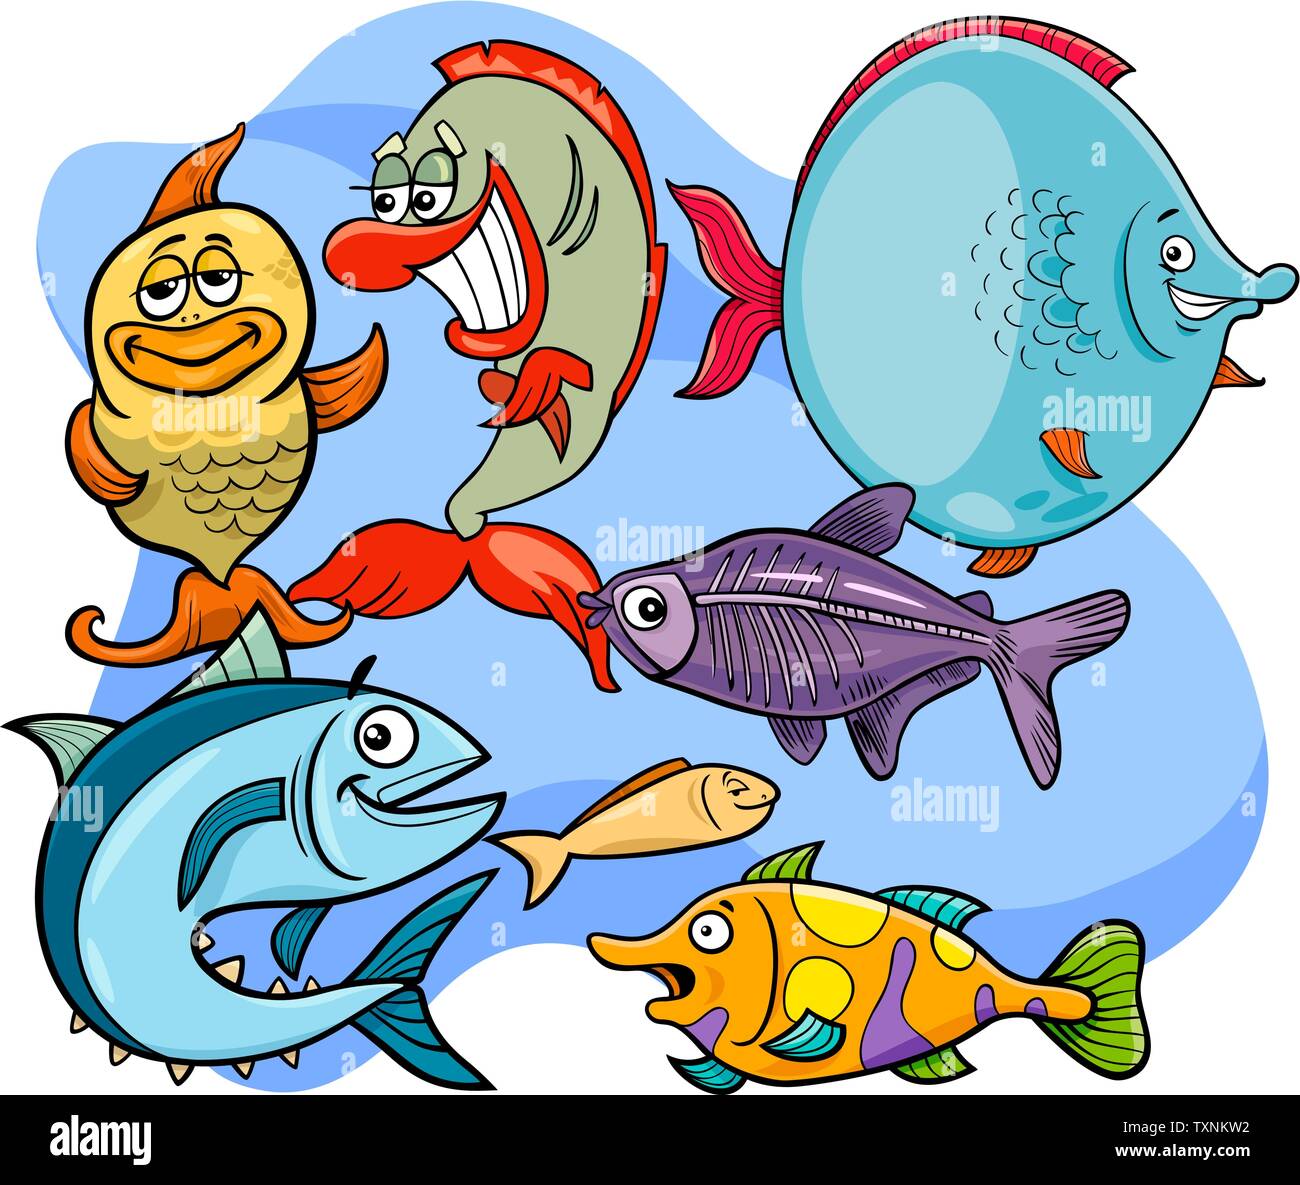 Ilustraciones de dibujos animados peces divertidos personajes marinos Sea  Life Group Imagen Vector de stock - Alamy